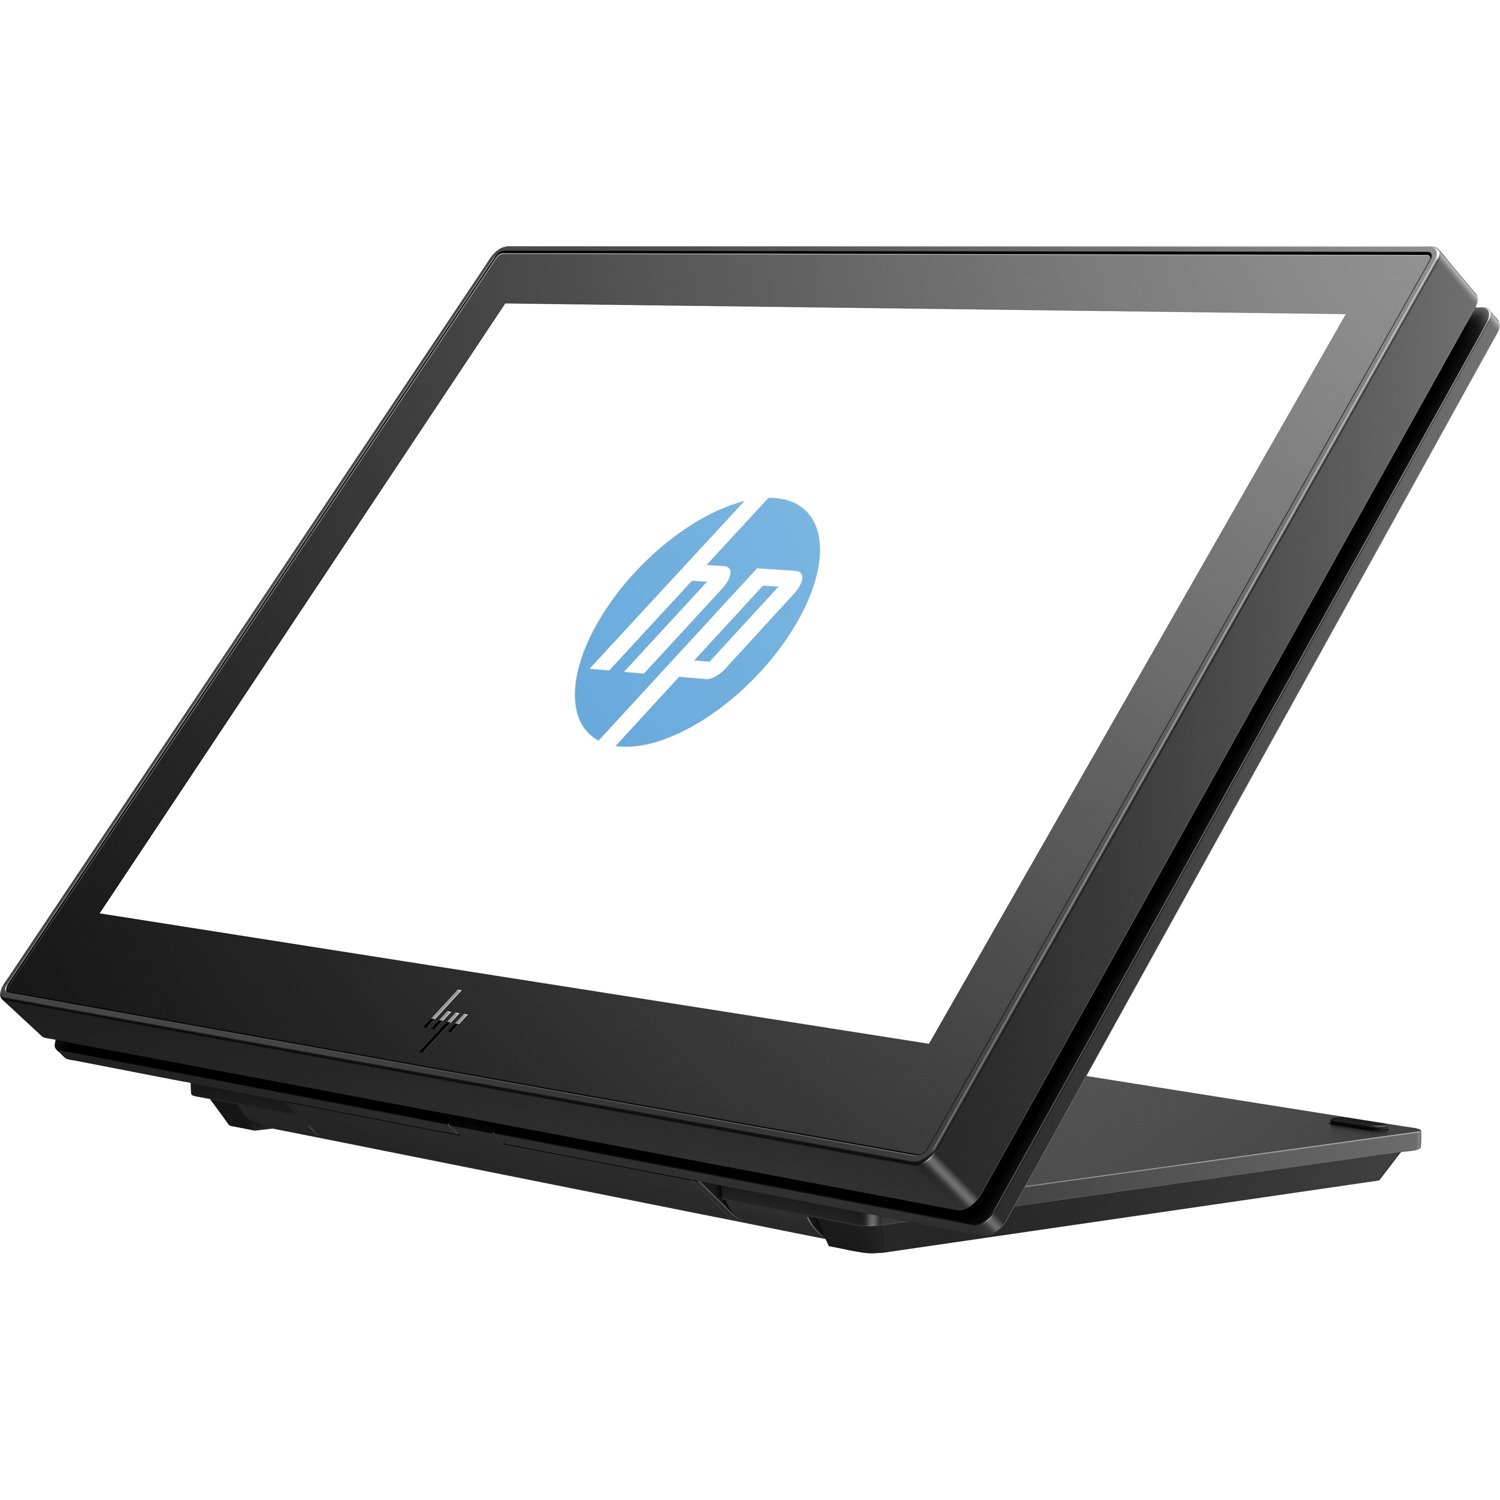 HP ElitePOS 10.1" WXGA LED LCD Monitor - 16:10 - Ebony Black